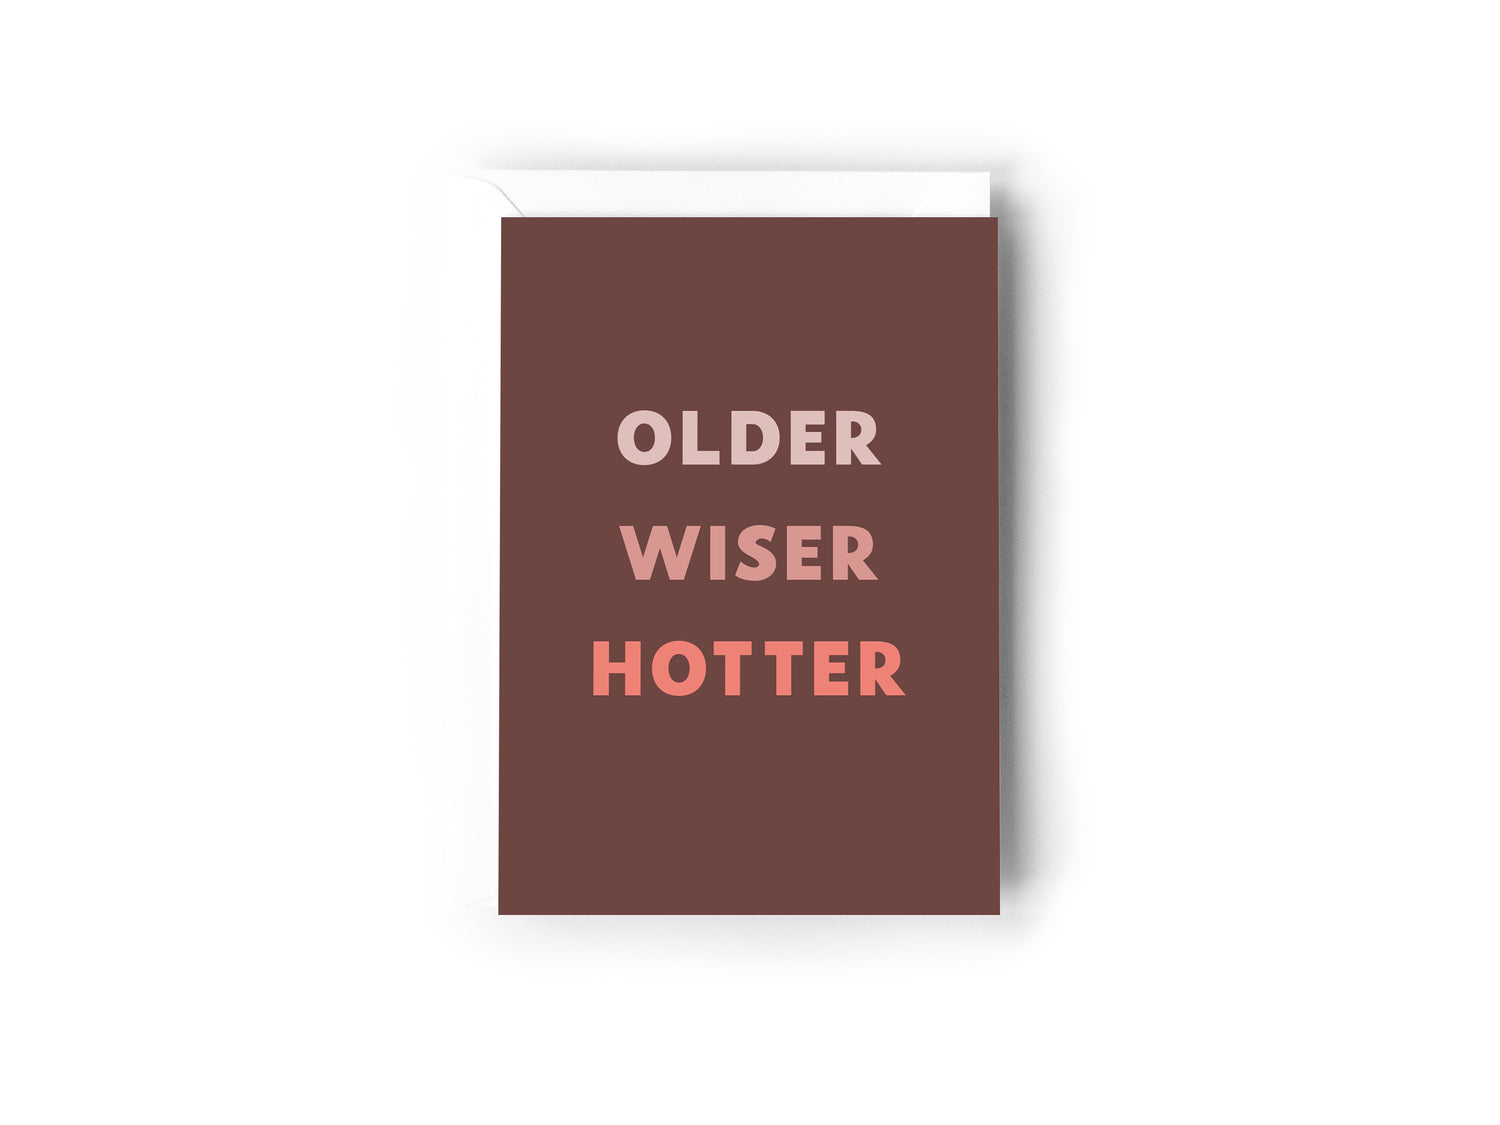 Older Wiser Hotter Card